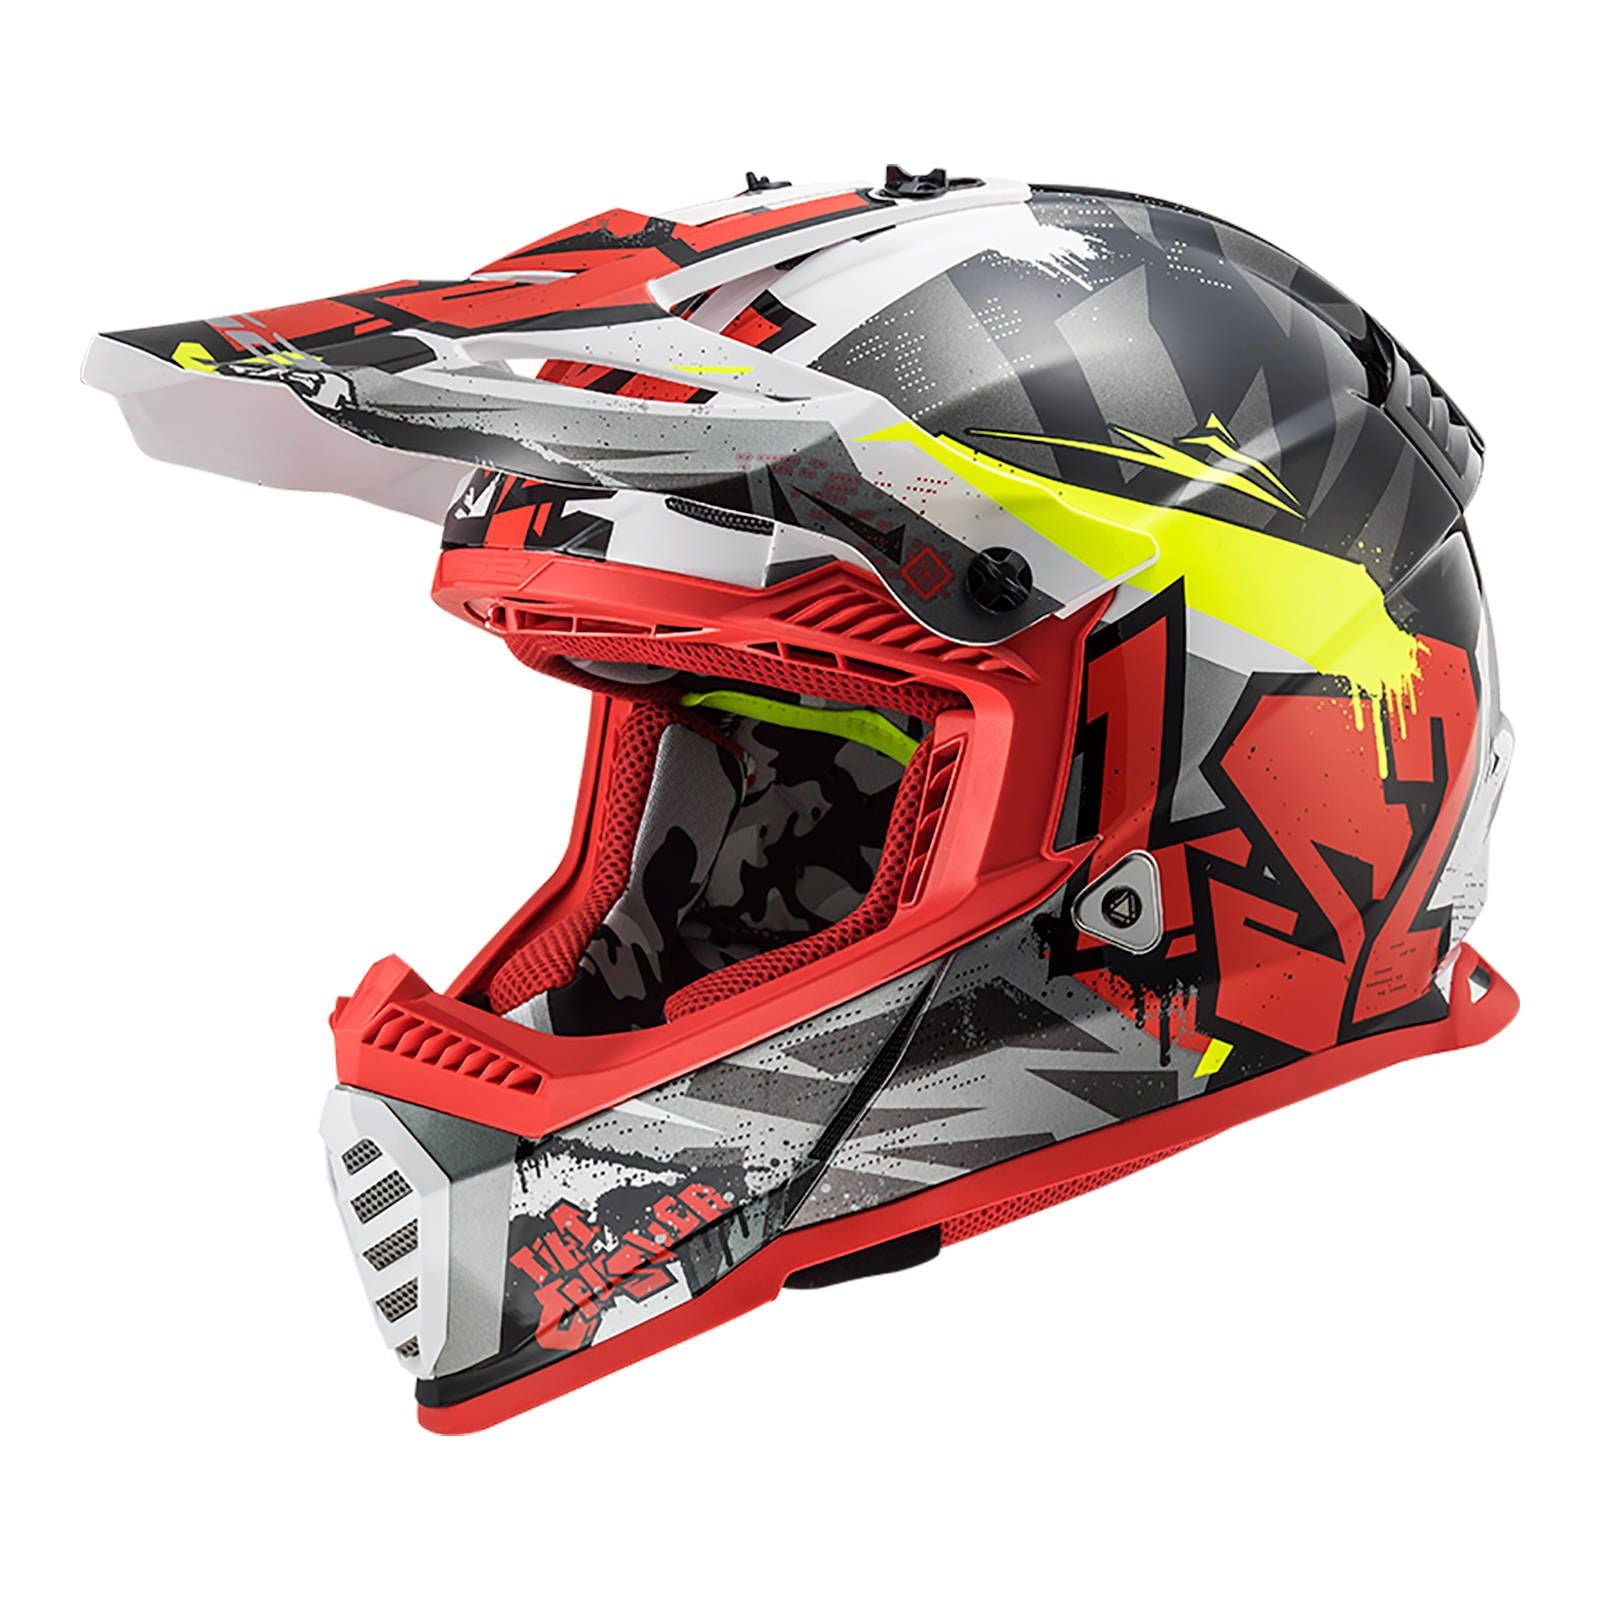 New LS2 MX437 Fast EVO Crusher Helmet - Black / Red / Grey (XL) #LS2MX437CRBRGXL